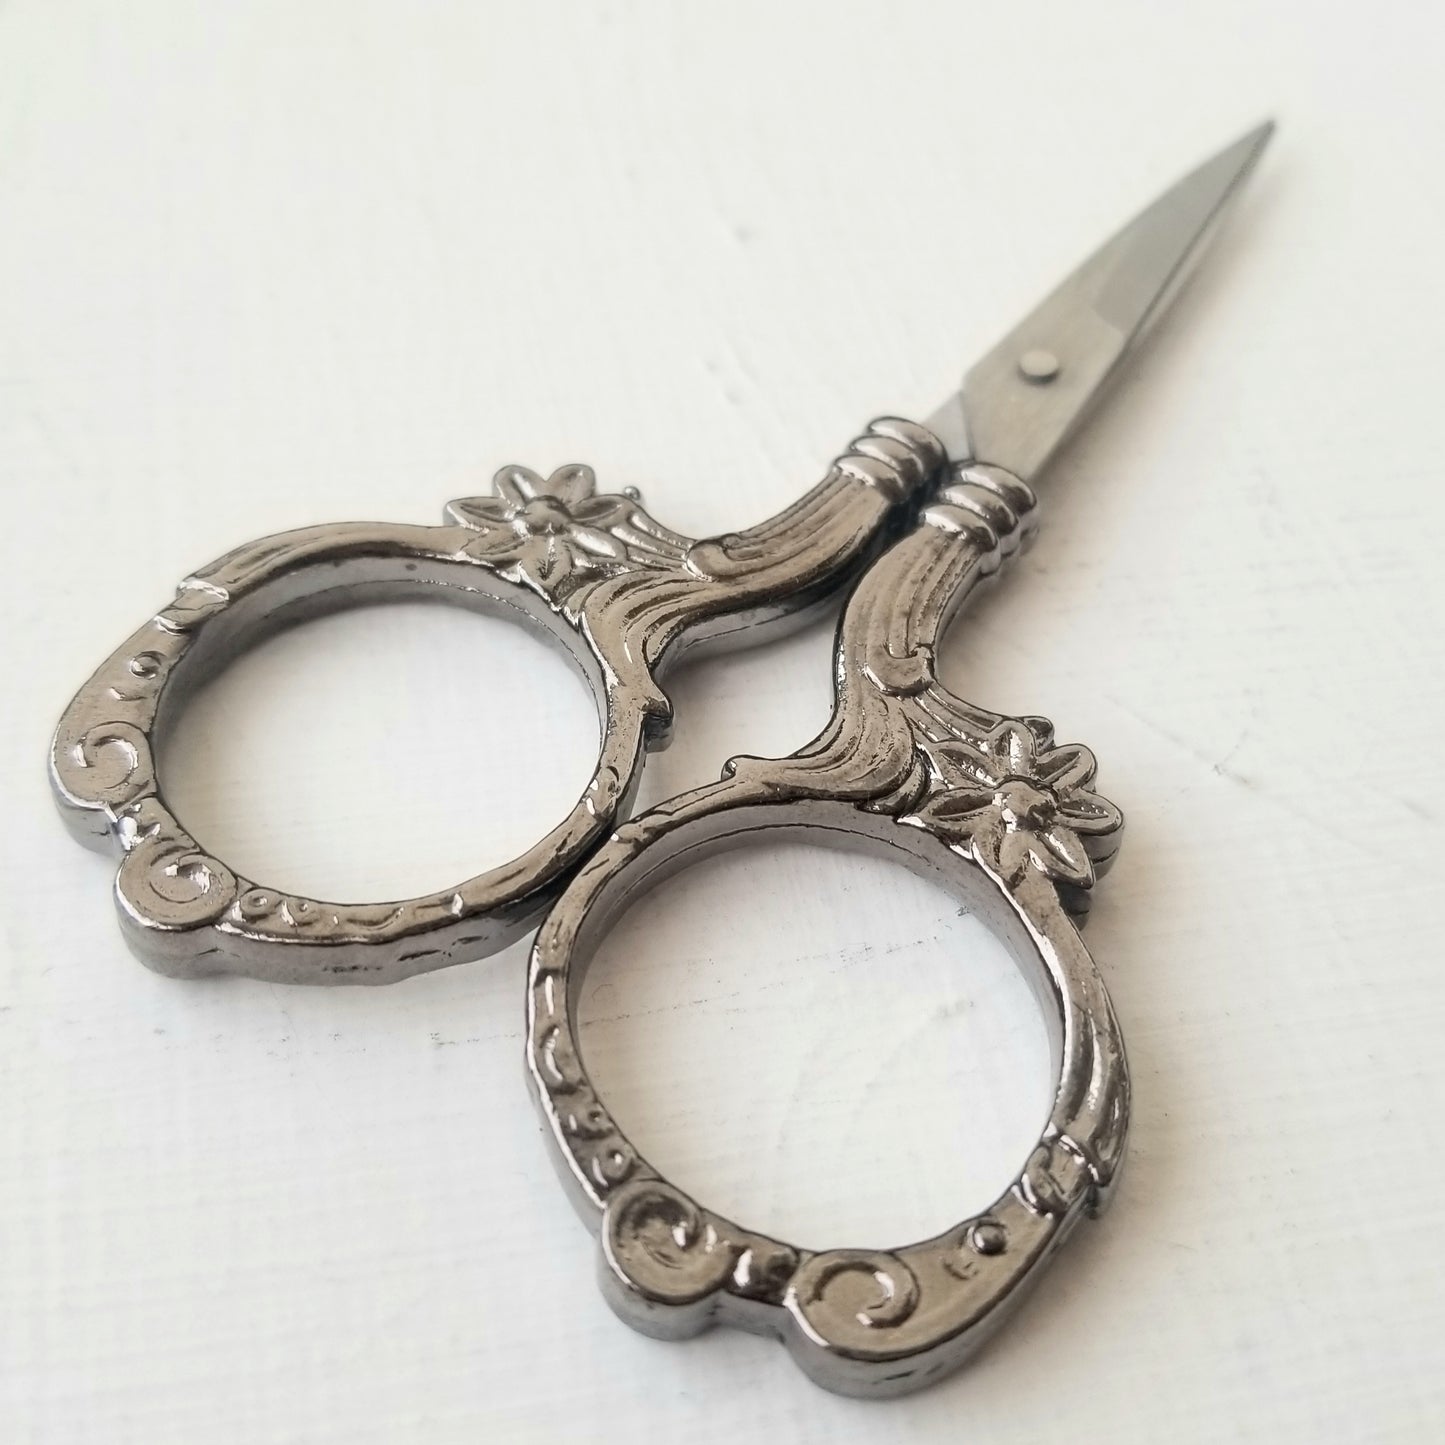 Ornate Silver Embroidery Scissors